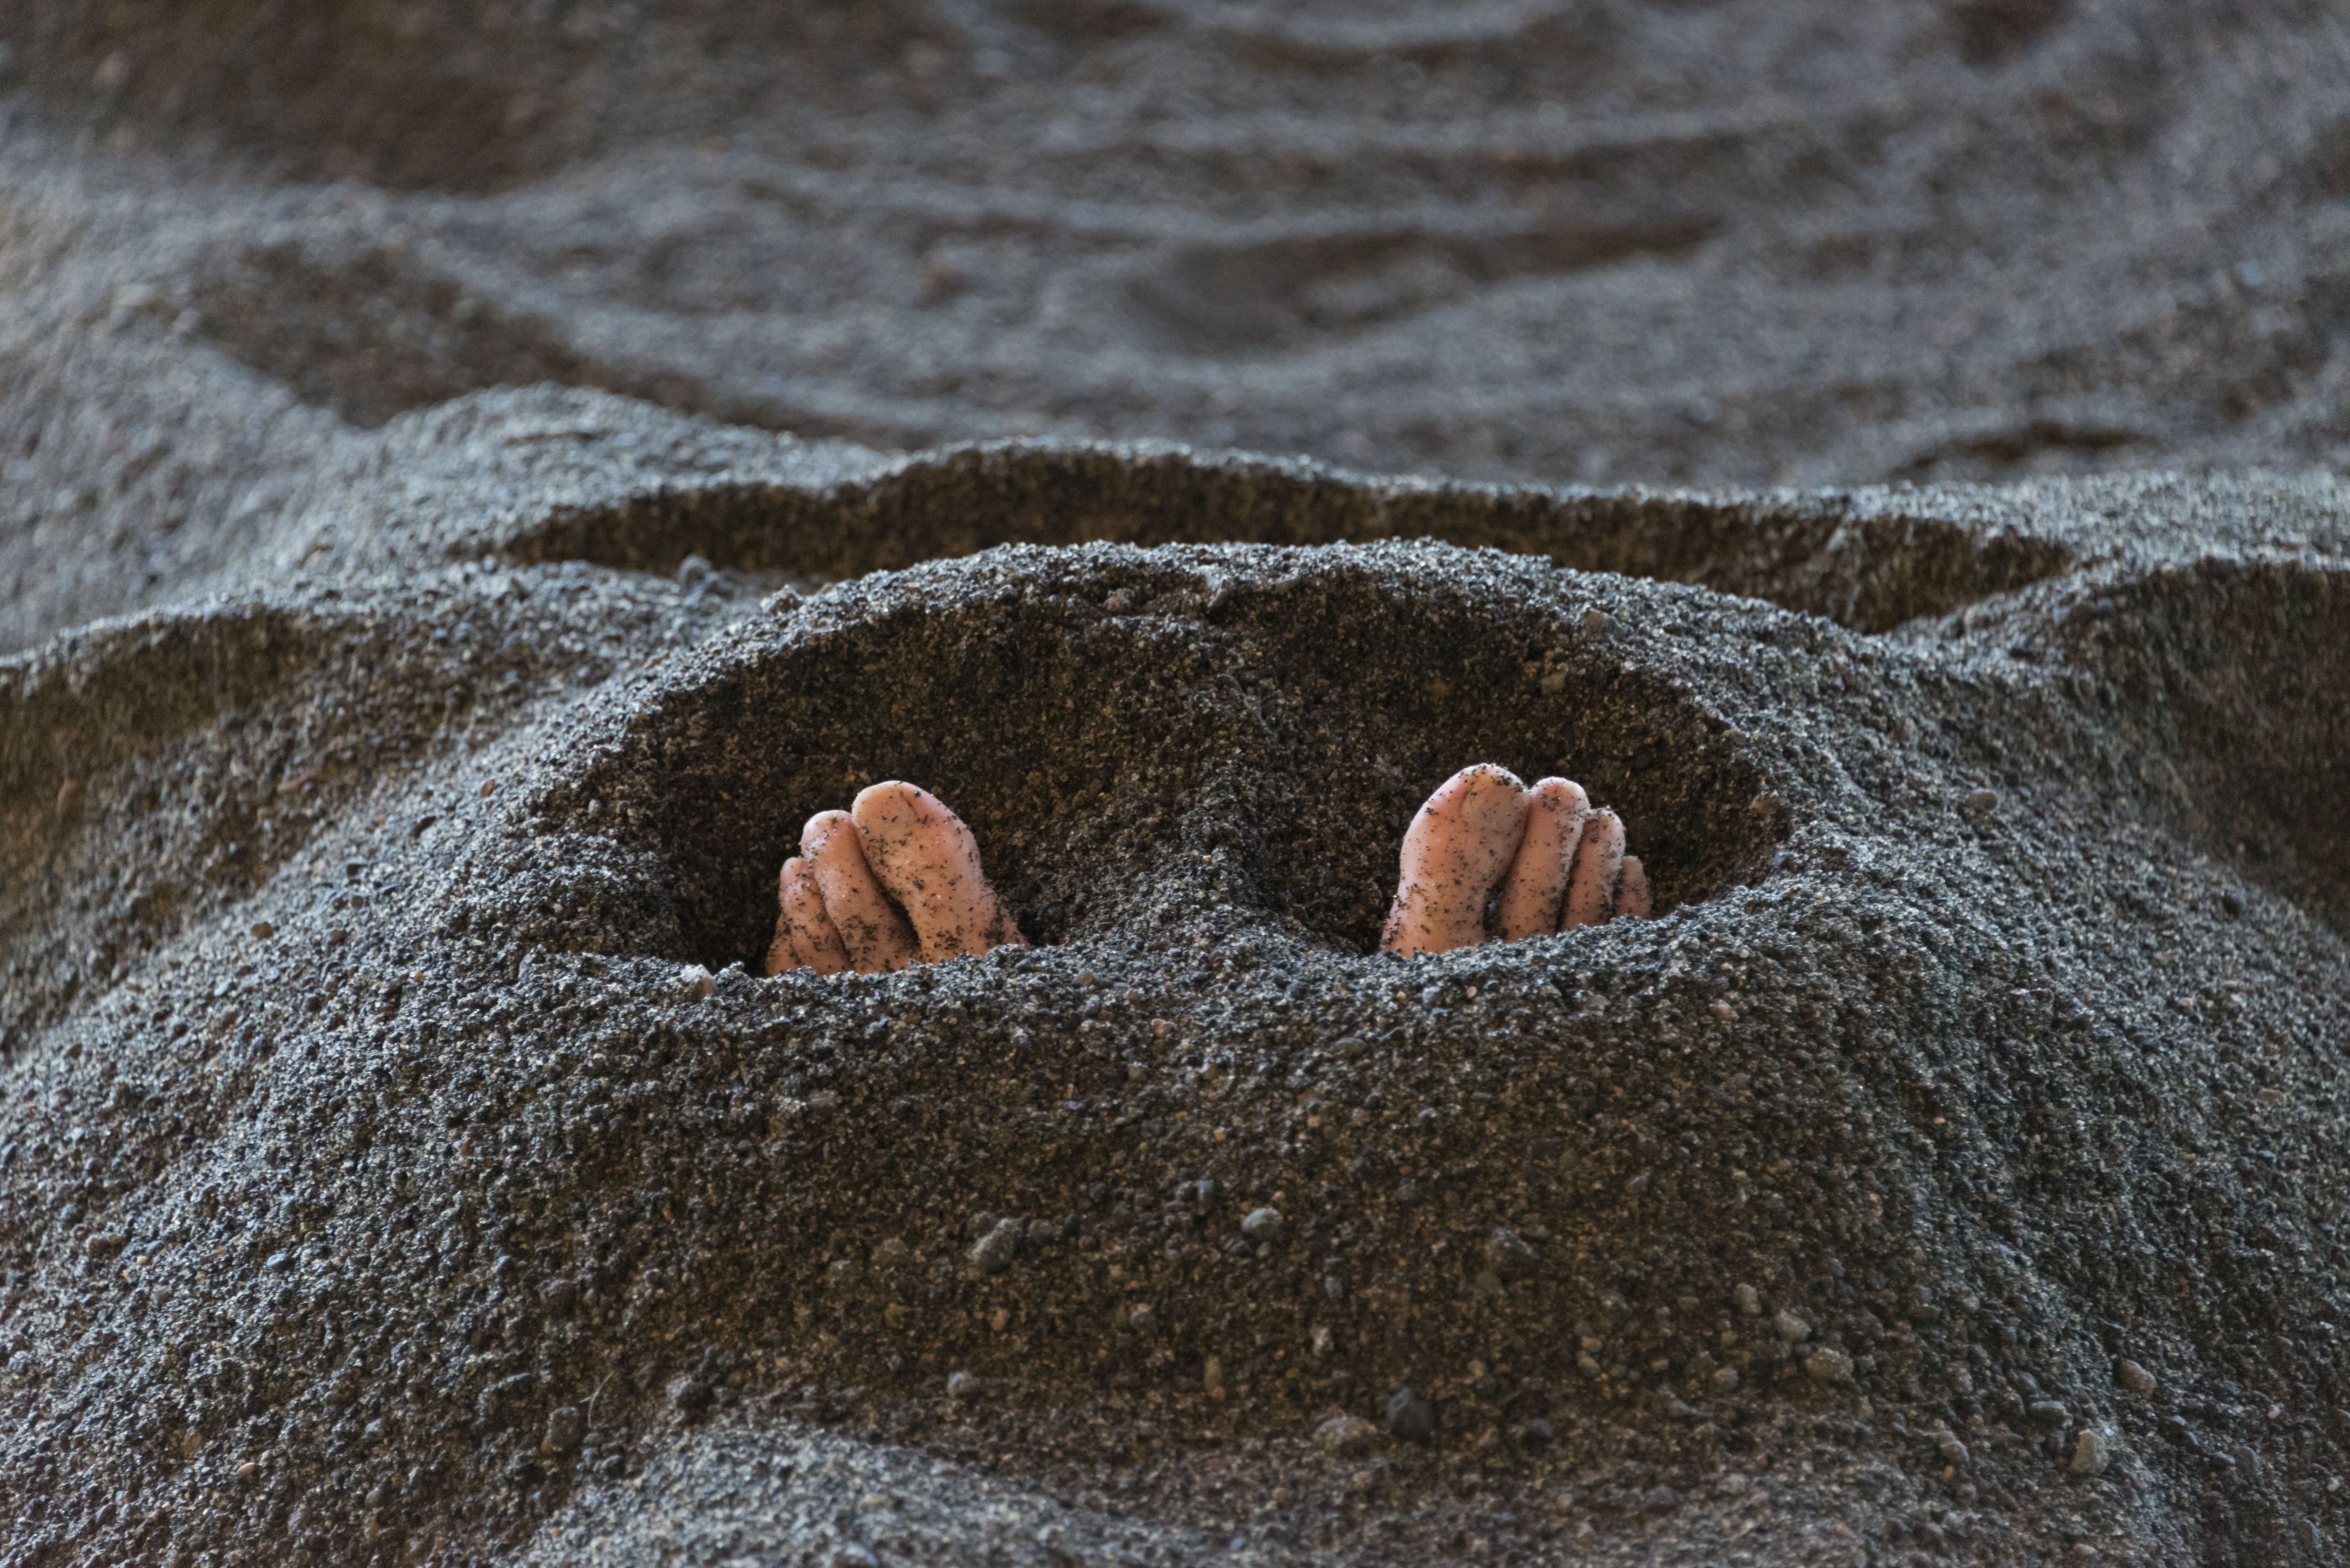 El departamento de la Facultad de Medicina de la Universidad de Kagoshima descubrió que estos baños de arena mejoran la circulación sanguínea y disminuyen la inflamación corporal